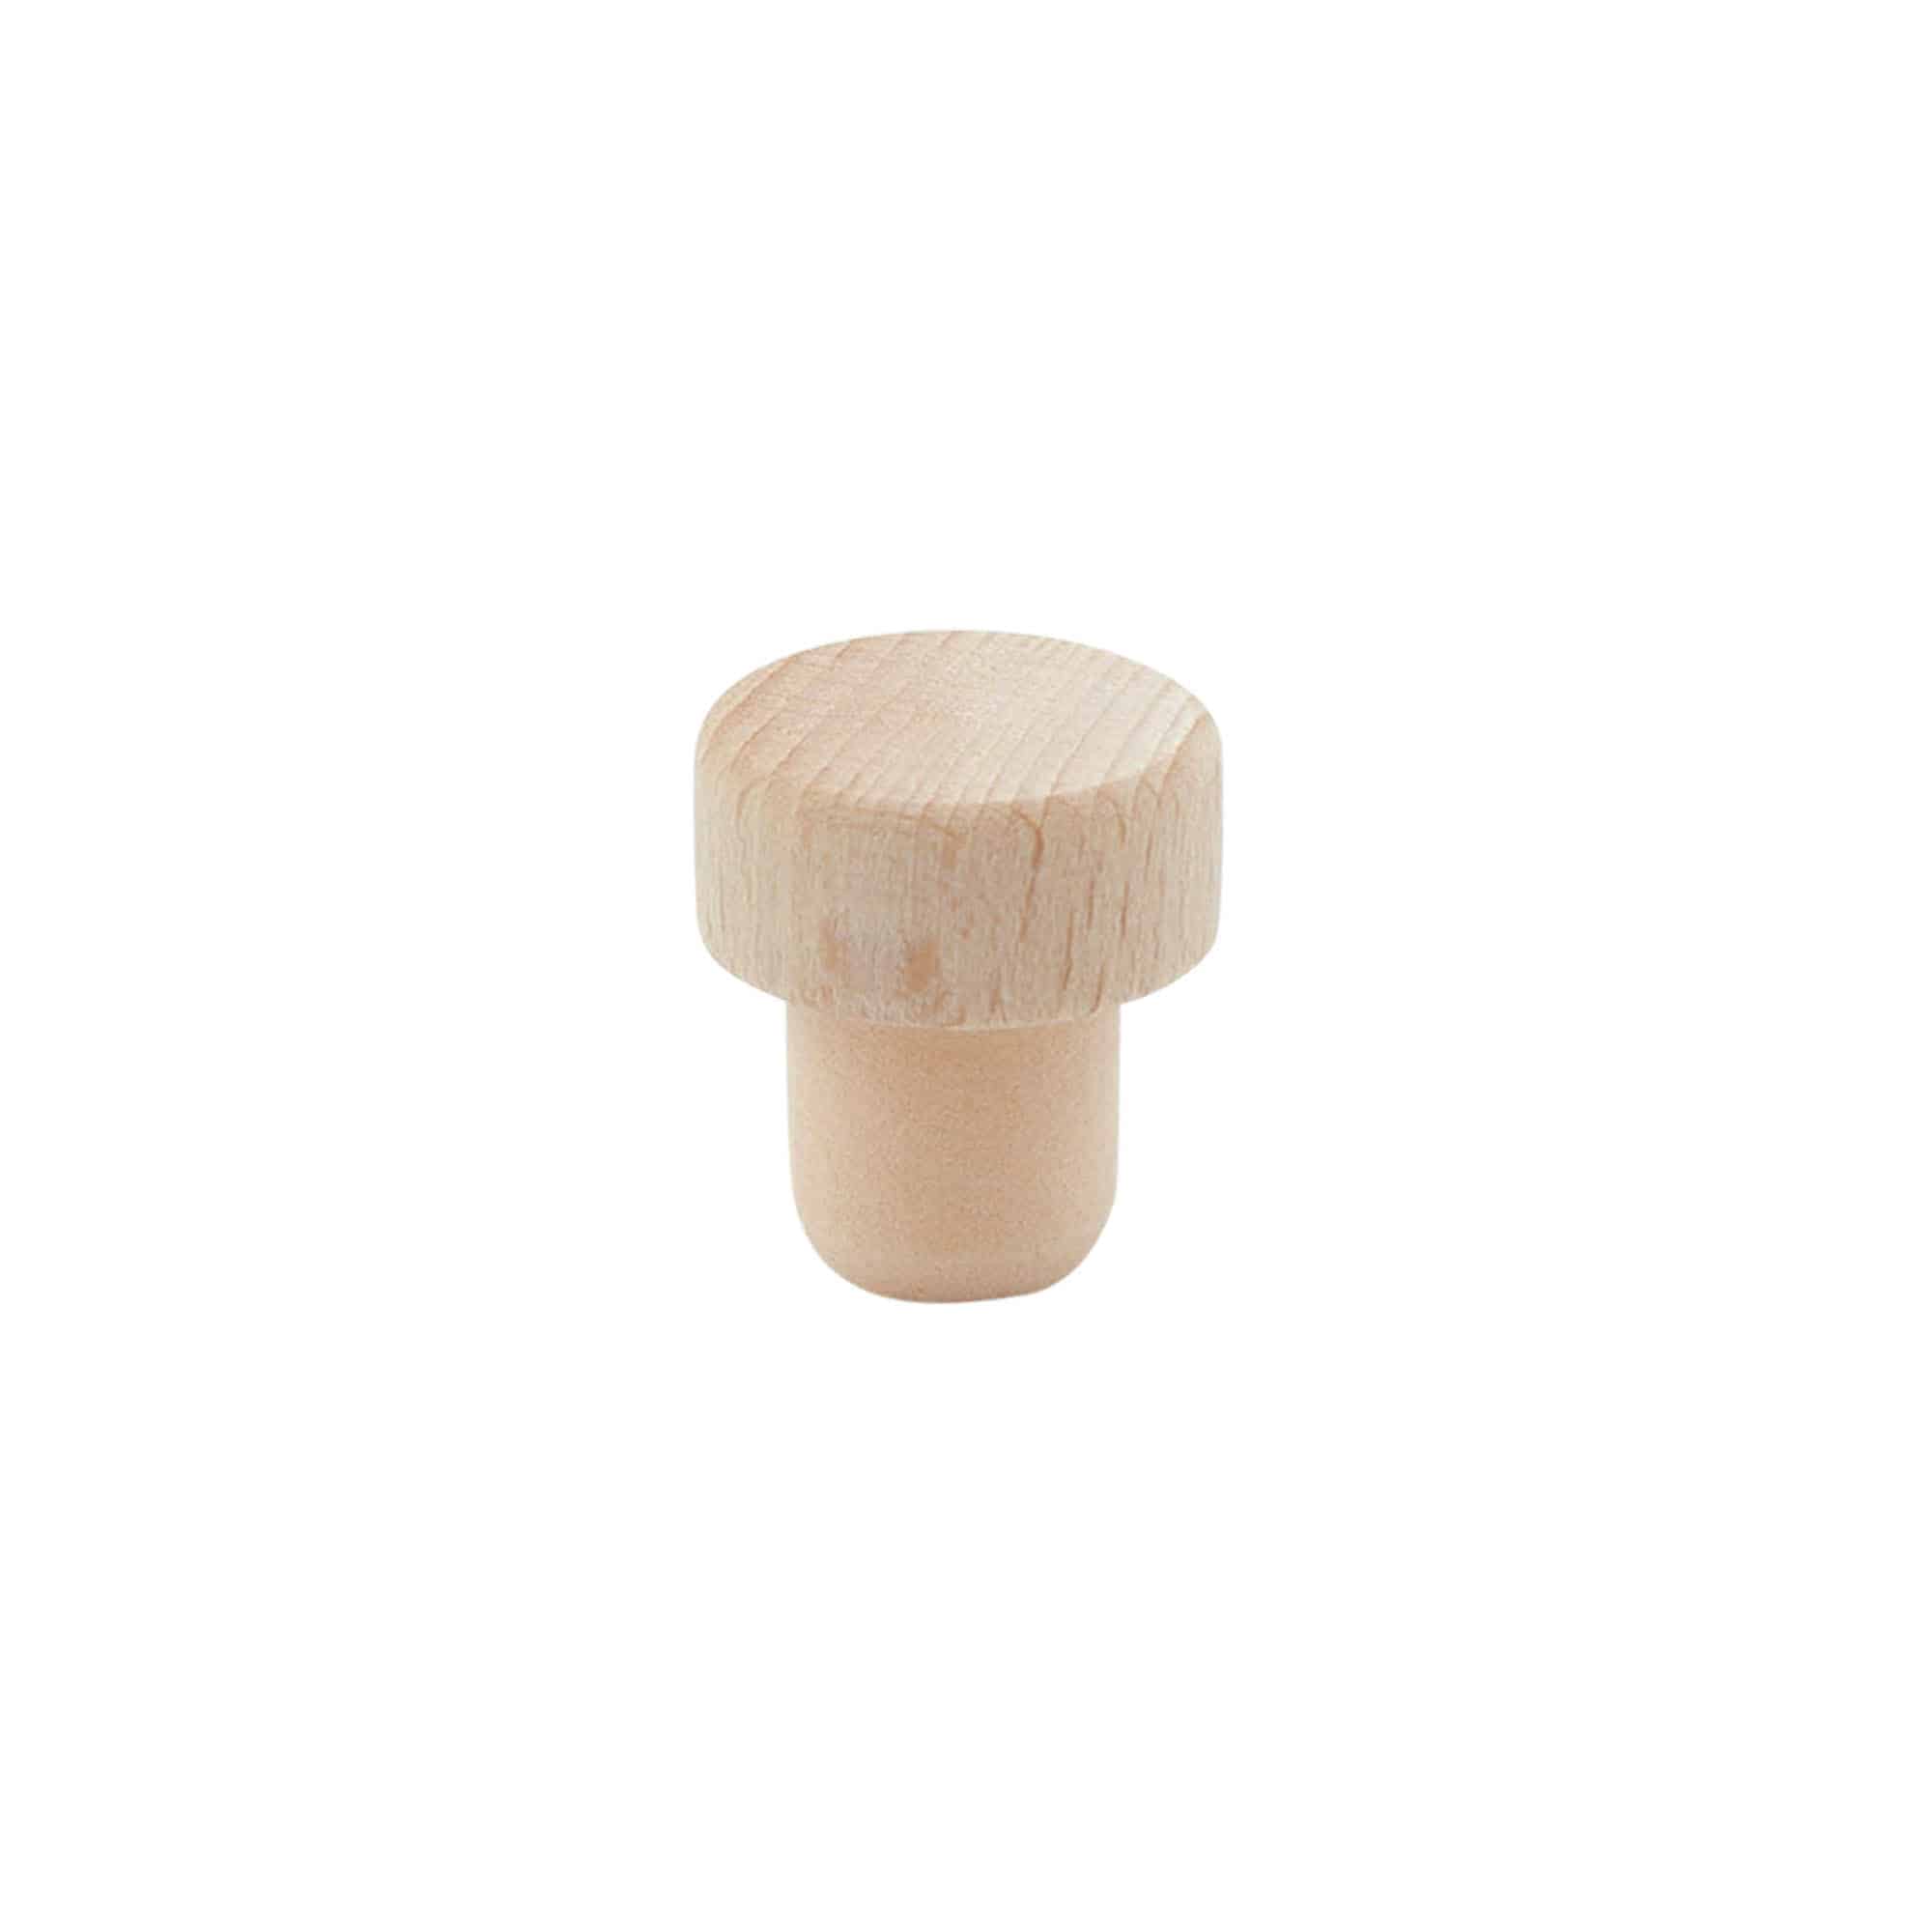 Tappo a fungo 14 mm, legno, per imboccatura: fascetta